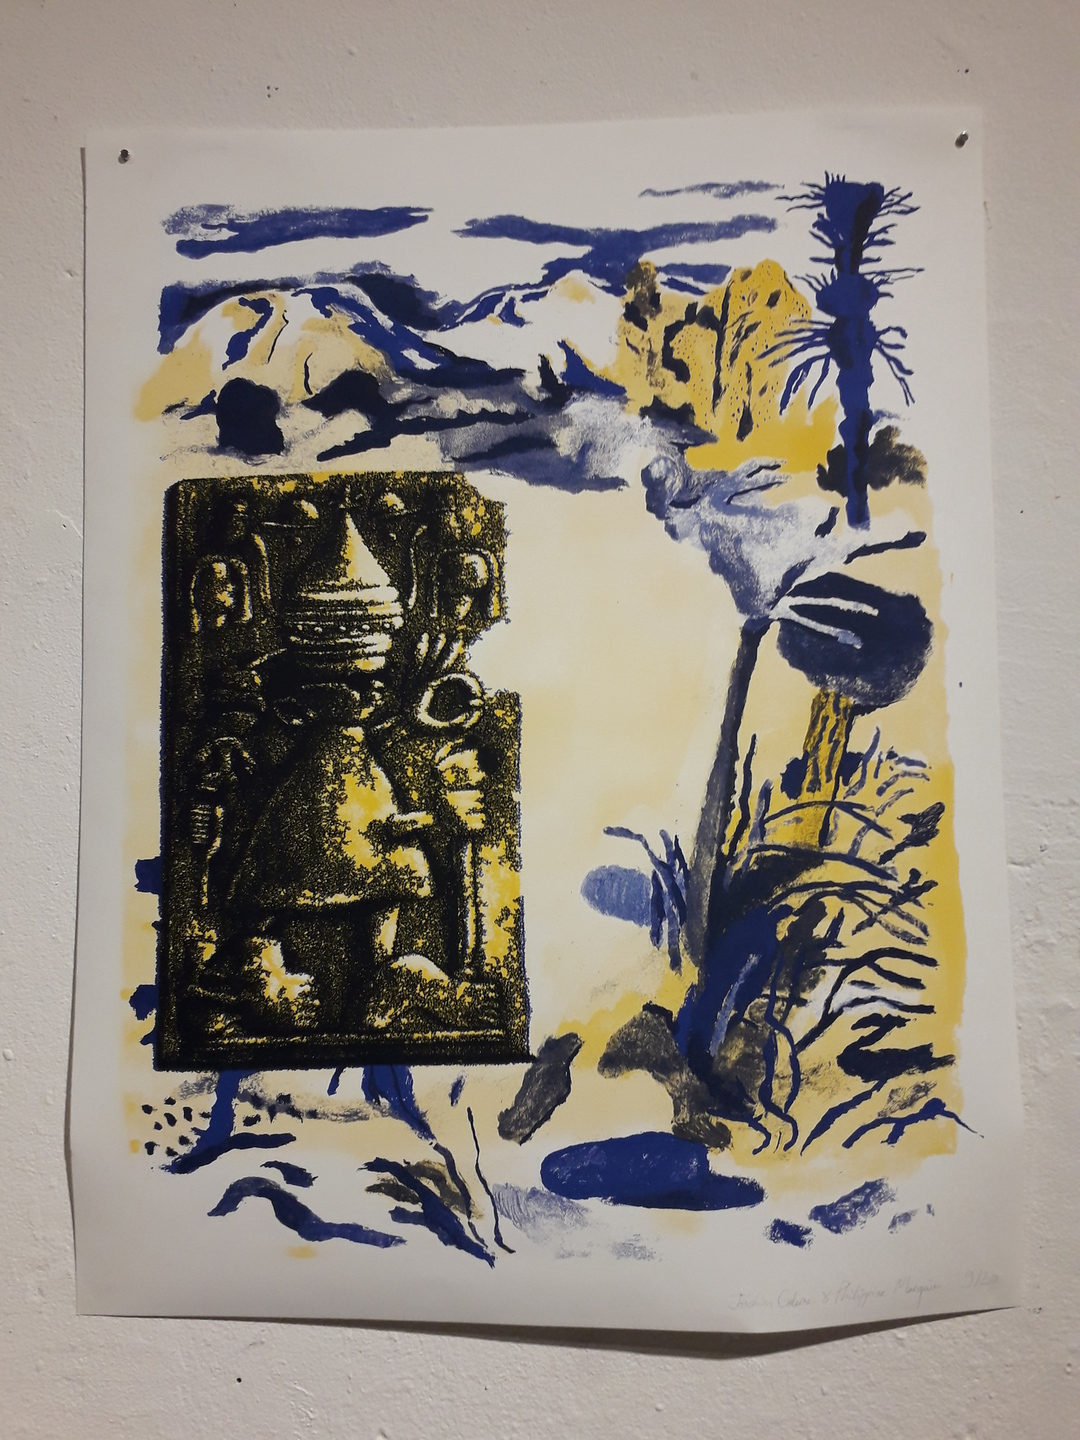 Illustration mêlant paysage et art ancien en bleu, jaune et noir